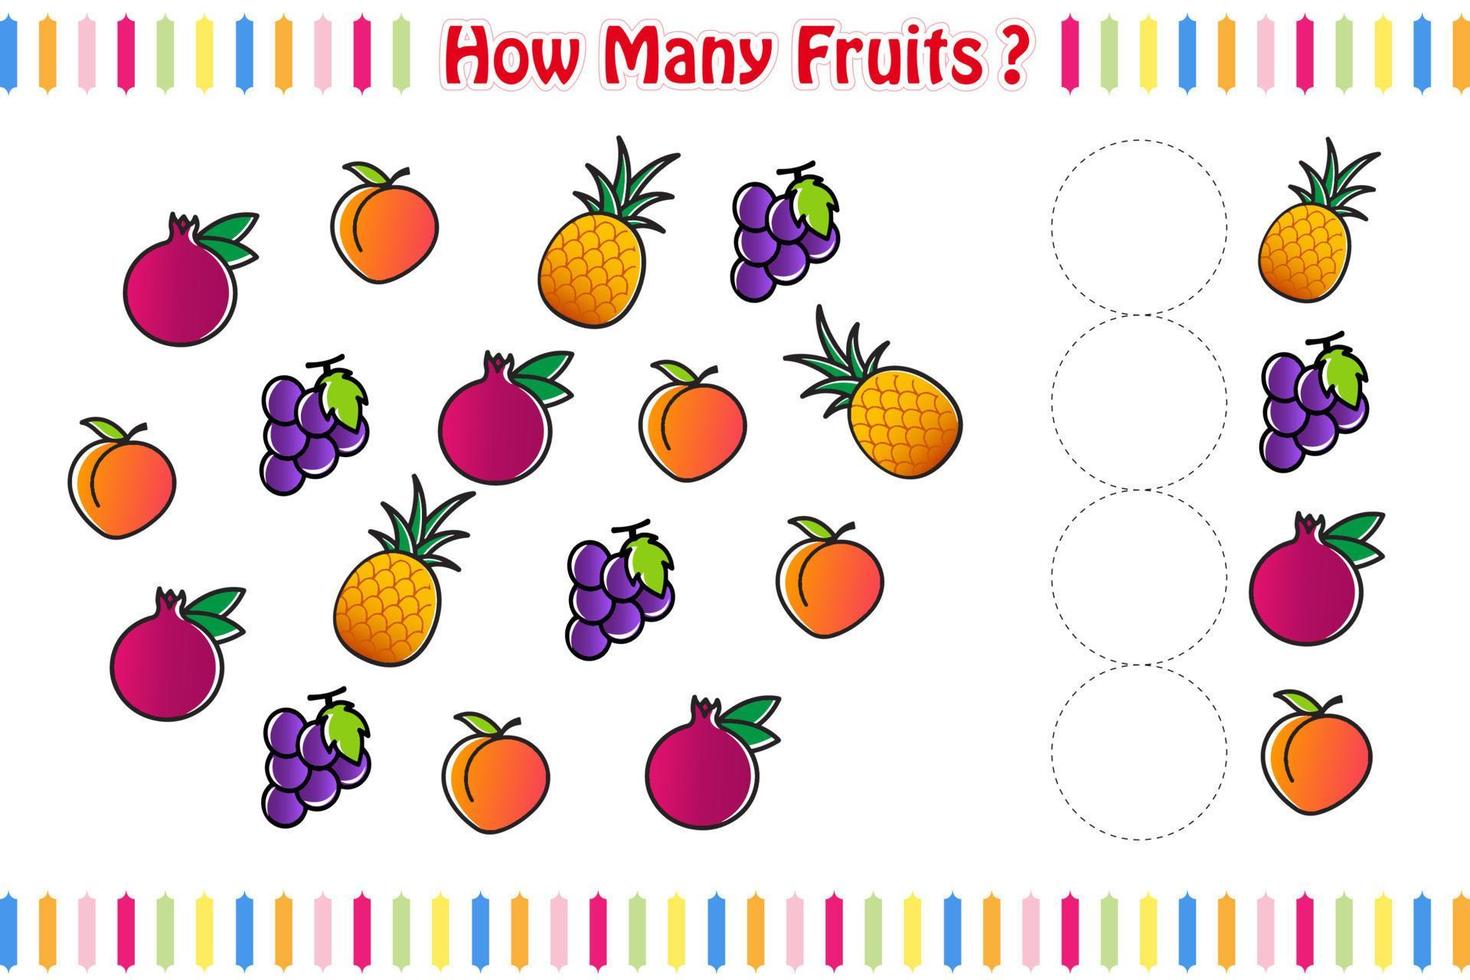 juego de conteo con lindas mascotas de frutas, hoja de cálculo de matemáticas del juego de frutas, ilustración vectorial aislada vector